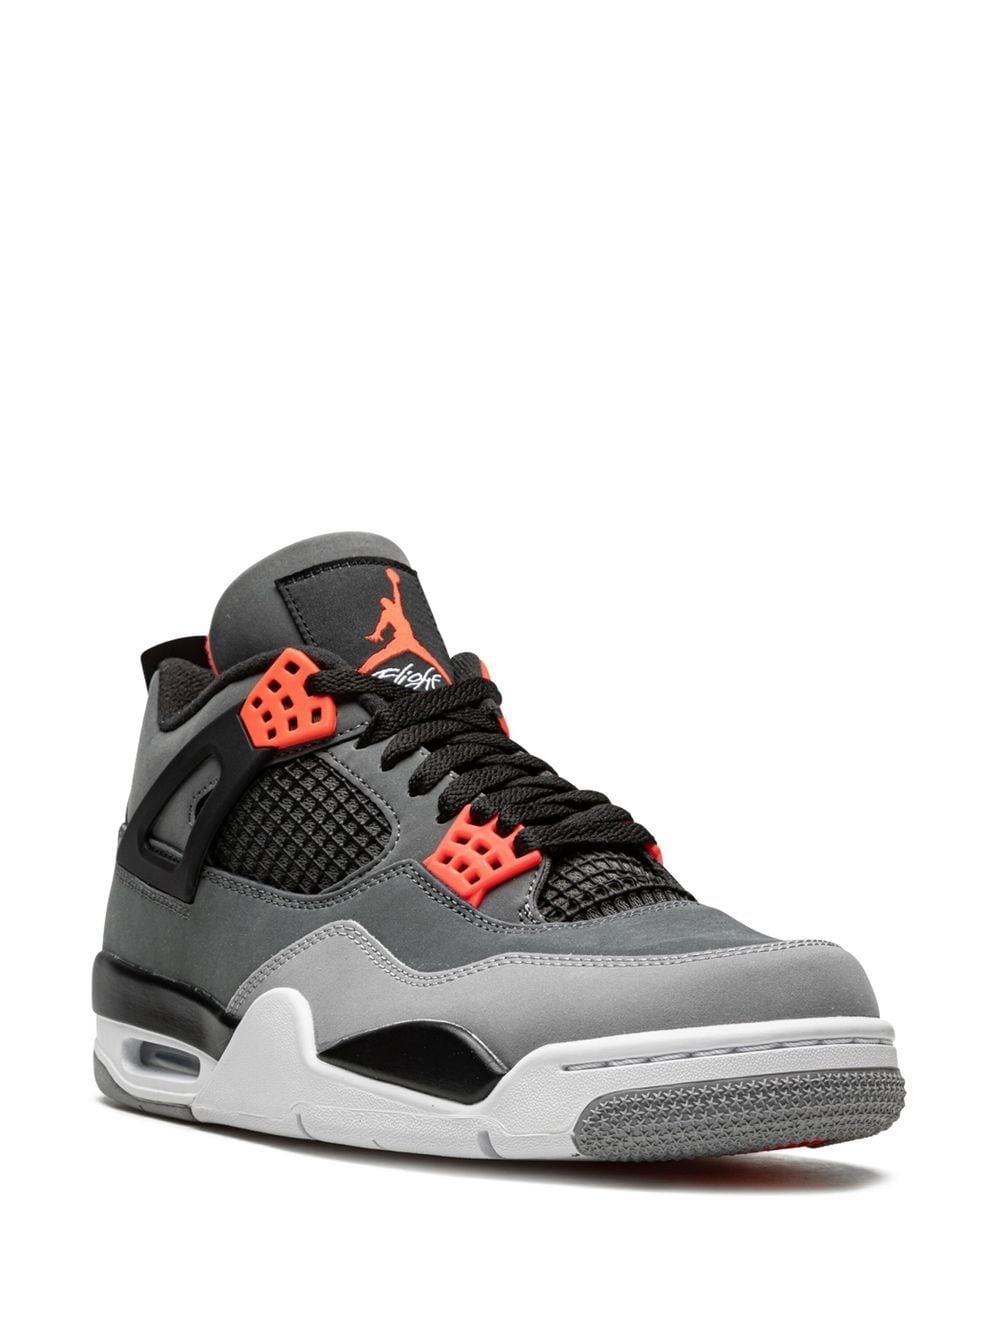 Air Jordan 4 Retro sneakers - 2